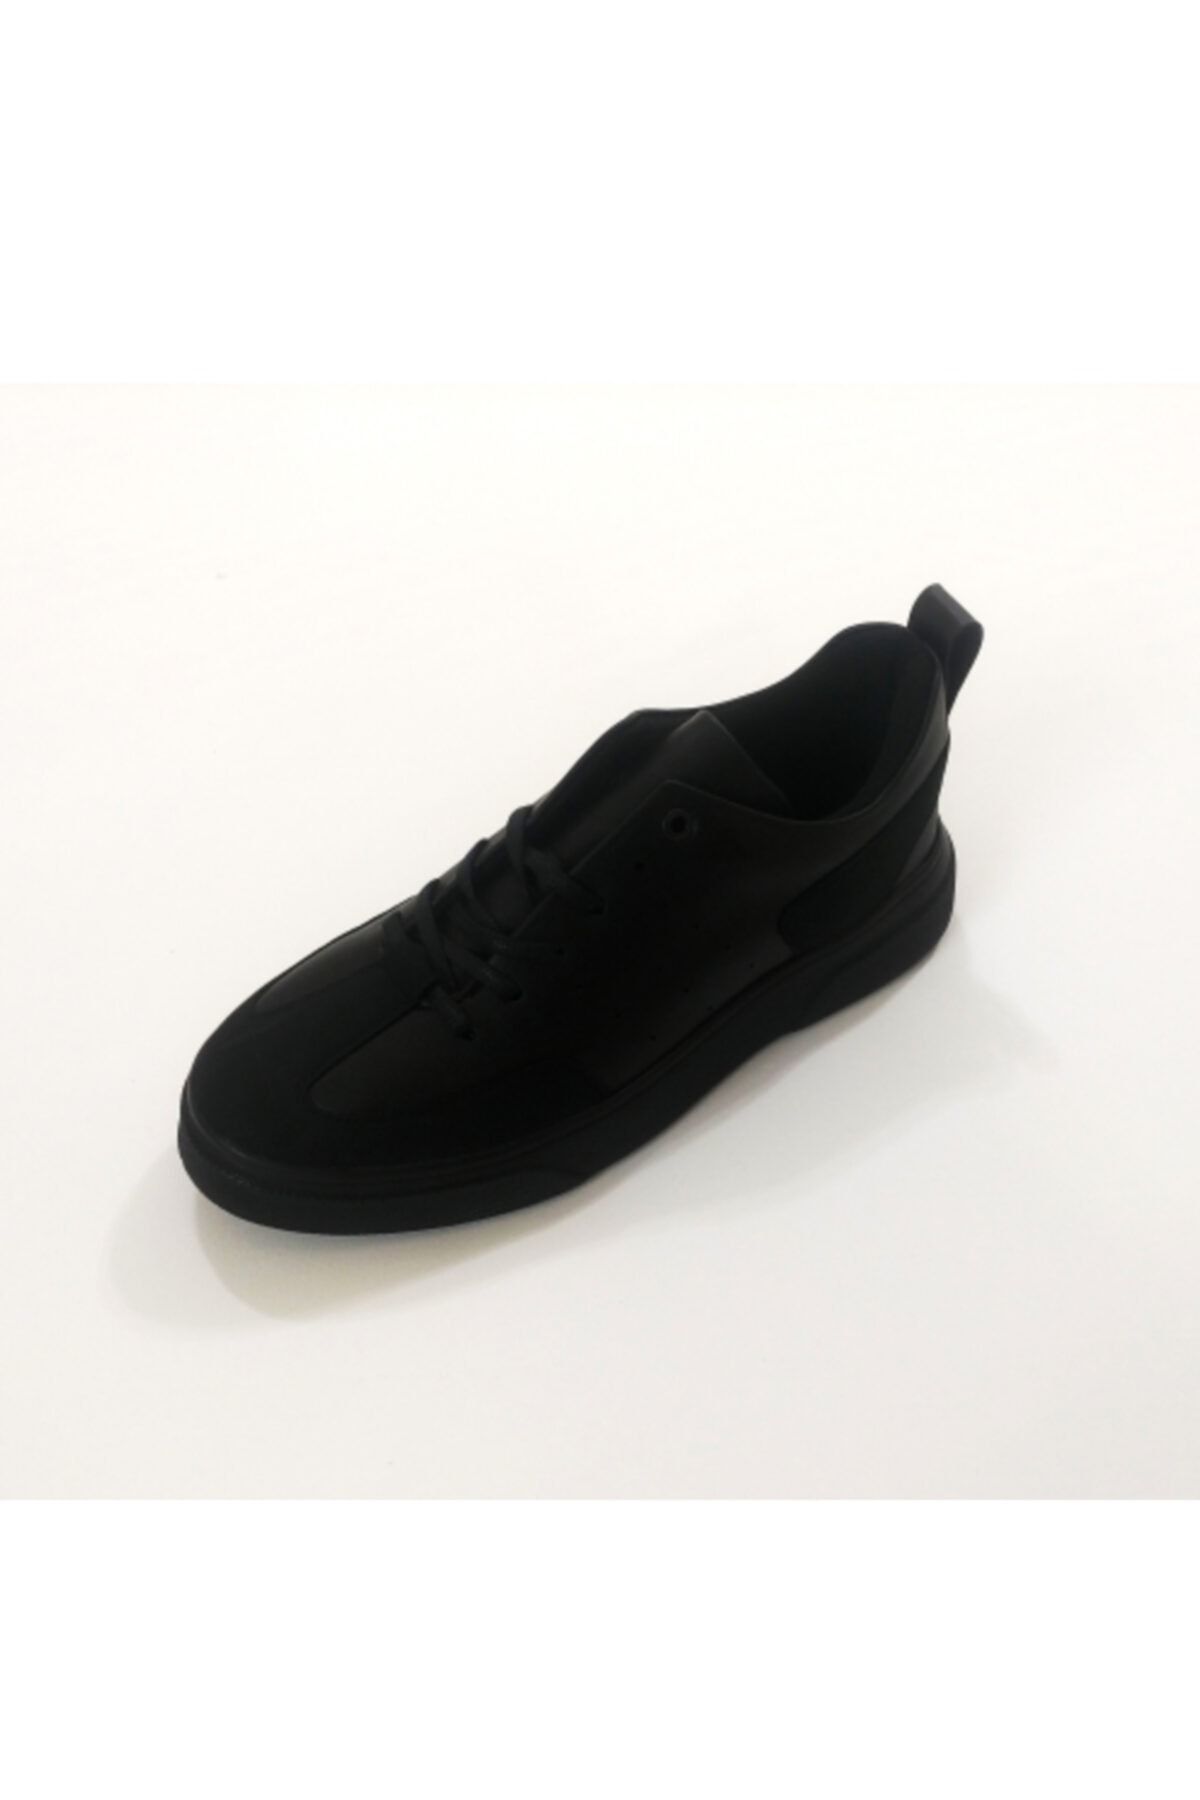 Conteyner Spor Ayakkabı Siyah Taban